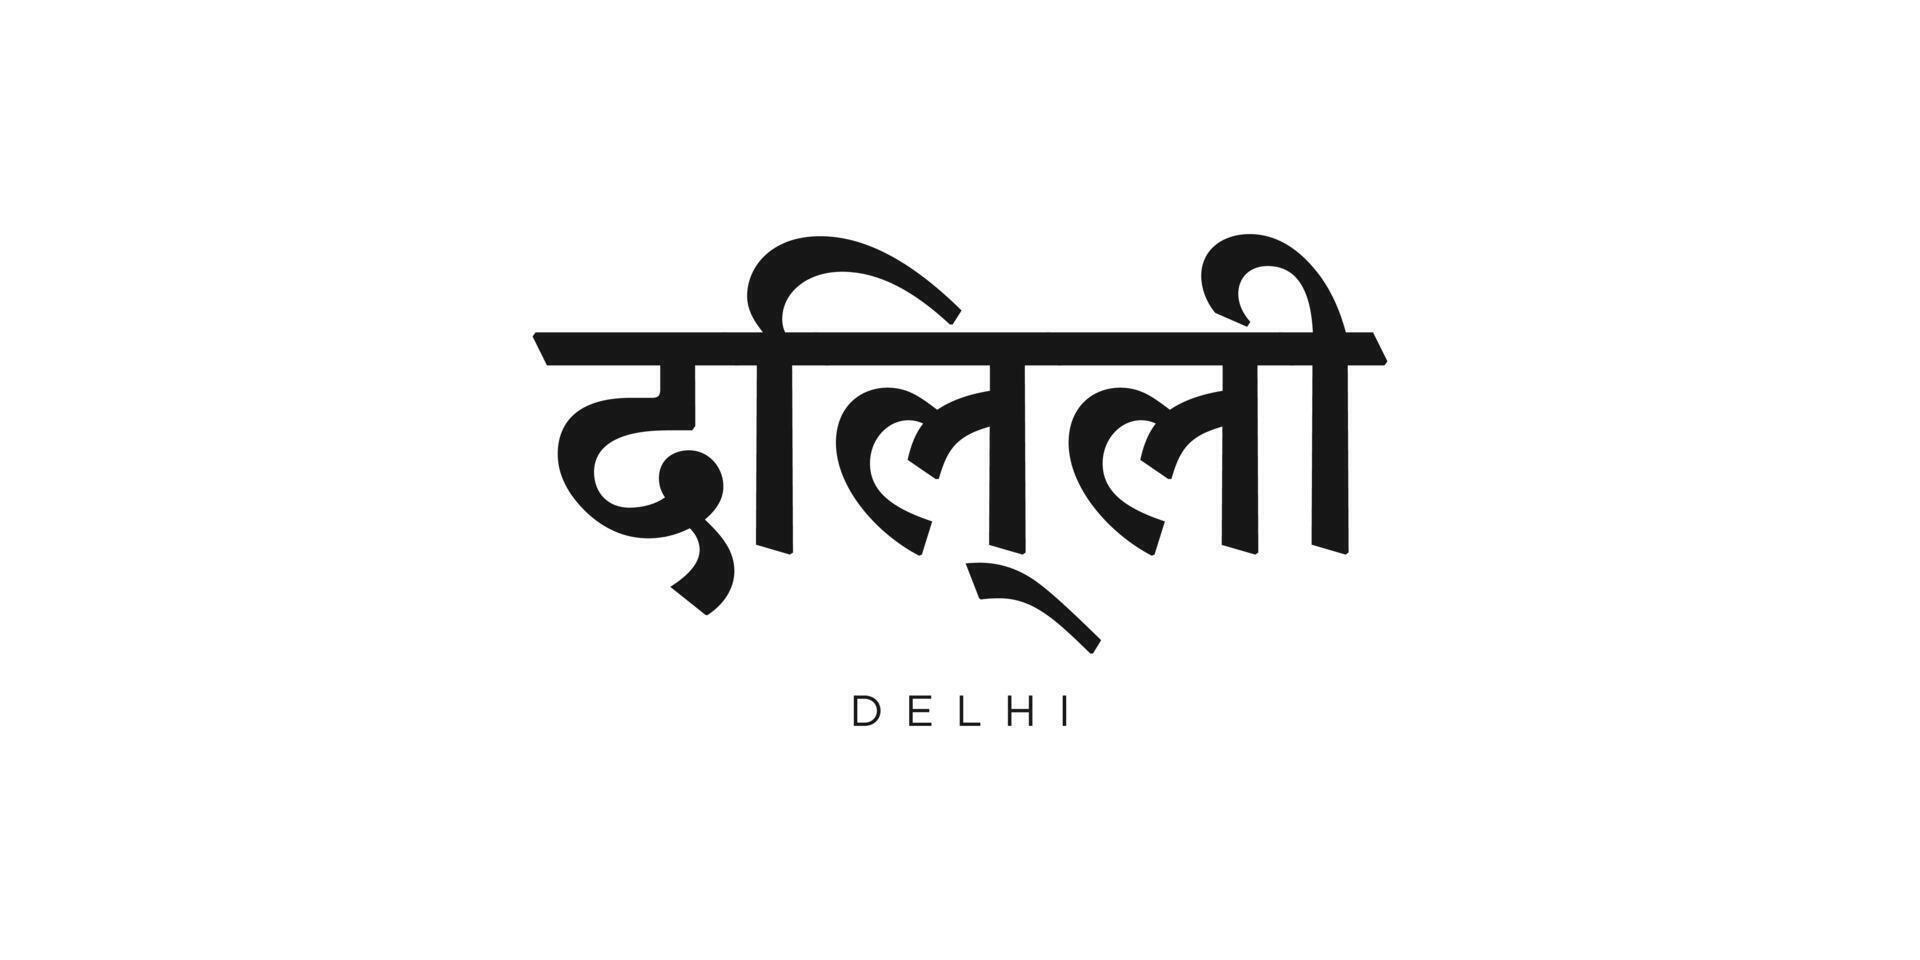 Delhi in de Indië embleem. de ontwerp Kenmerken een meetkundig stijl, vector illustratie met stoutmoedig typografie in een modern lettertype. de grafisch leuze belettering.